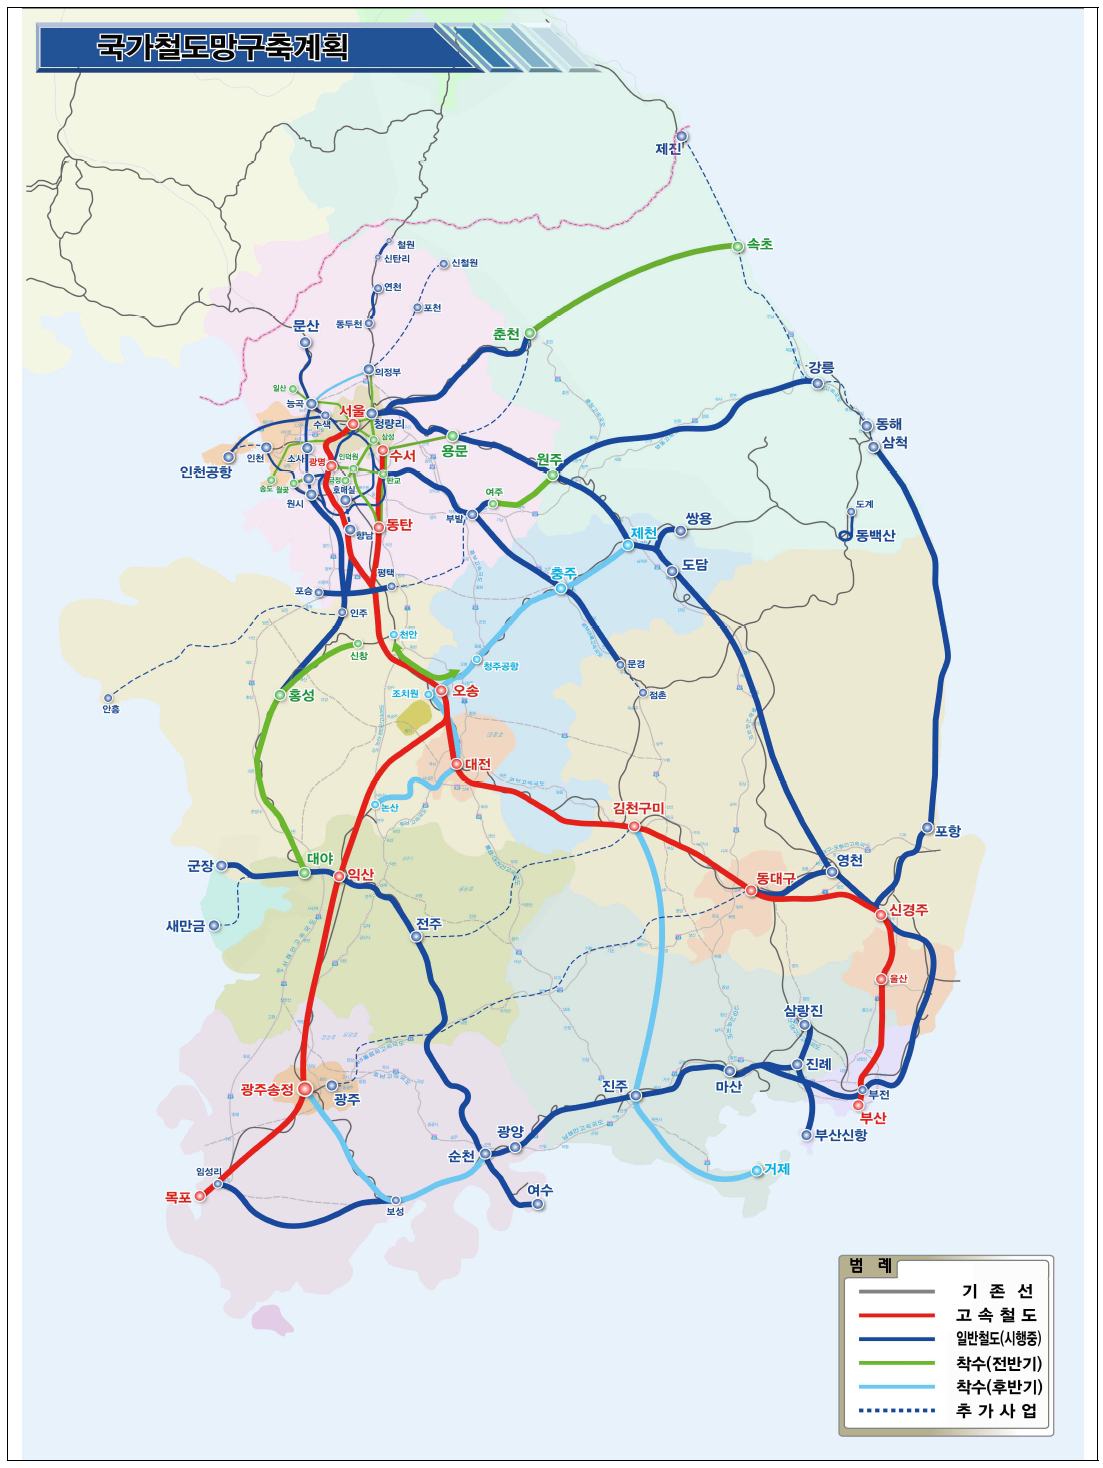 국가 철도망 구축 계획도